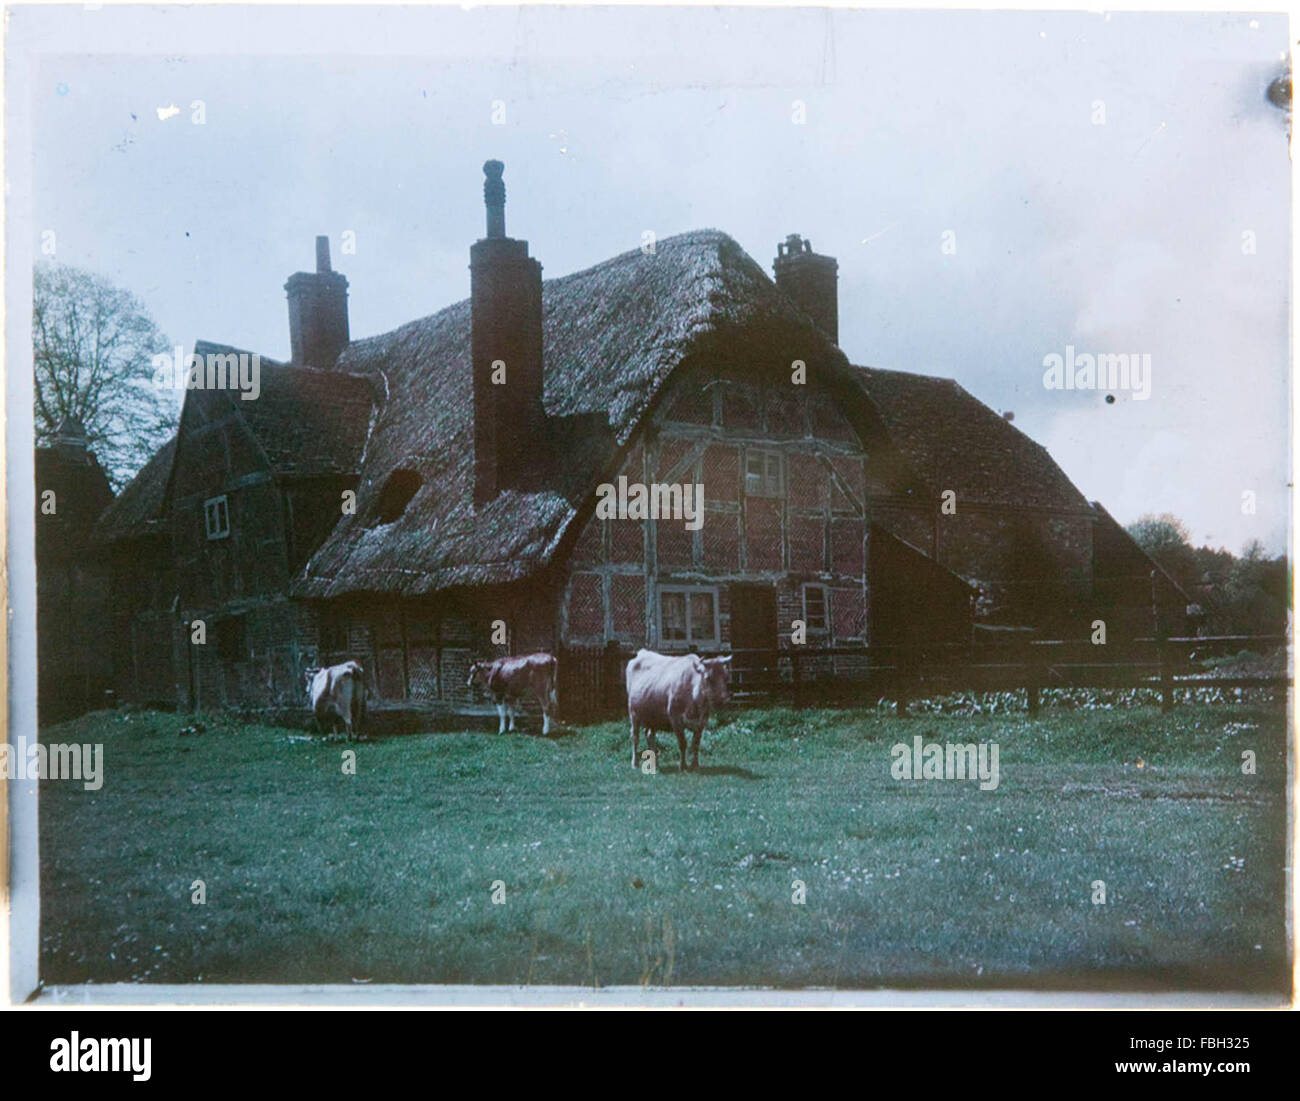 Inizio immagine a colori di cottage con il tetto di paglia, ora identificato come Corhampton, Hampshire. Paget processo a Colori (Immagine completa) Foto Stock